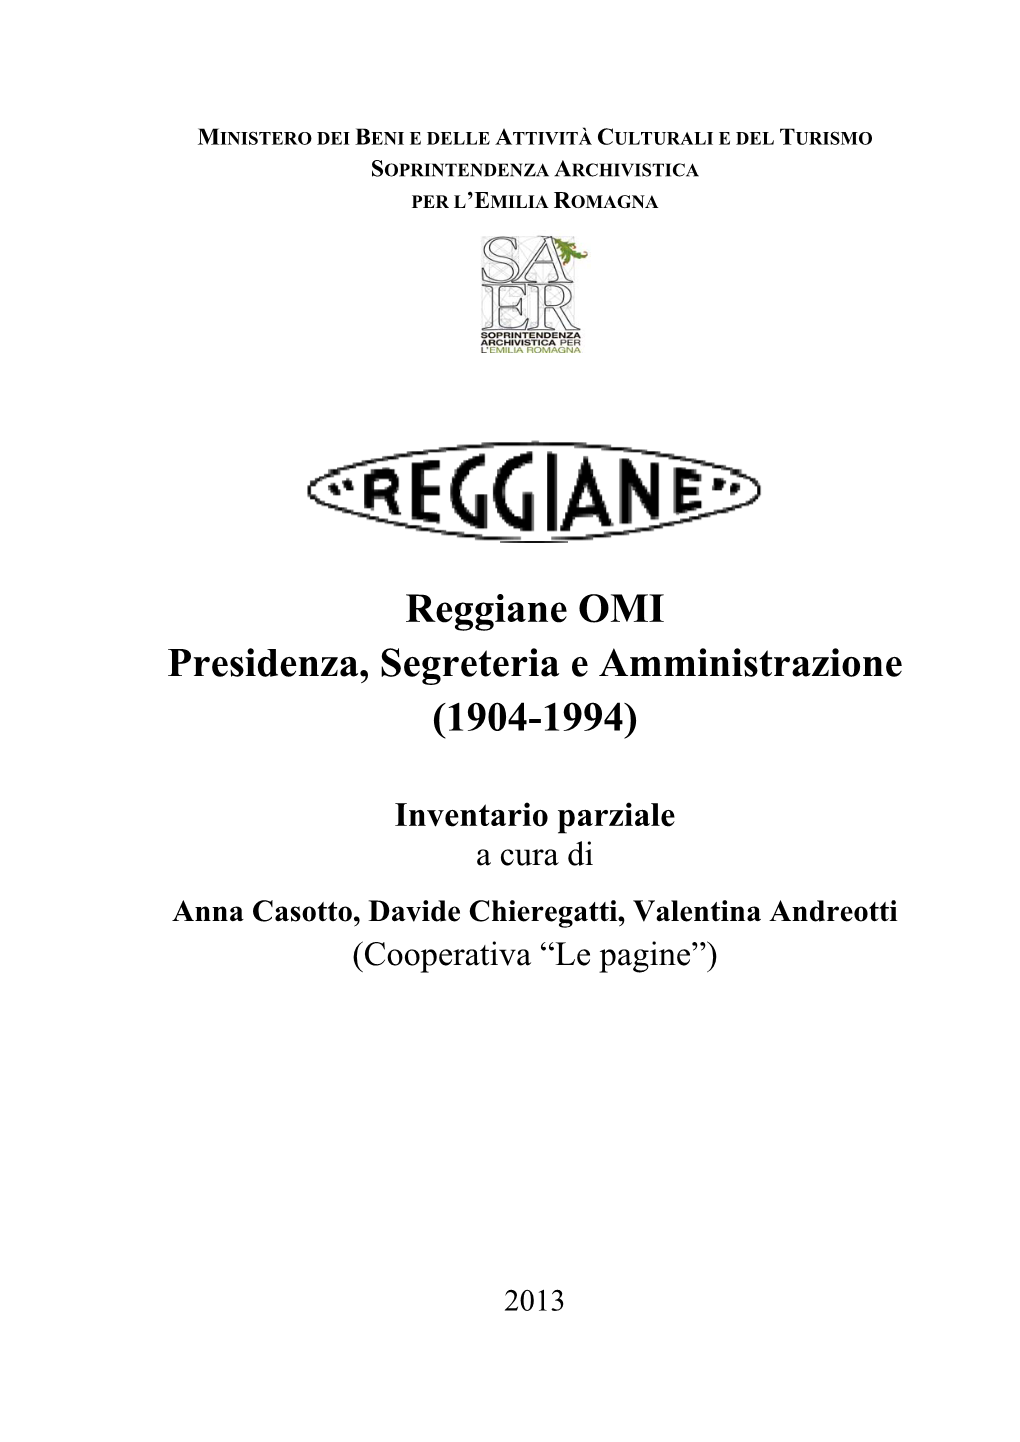 Reggiane OMI Presidenza, Segreteria E Amministrazione (1904-1994)